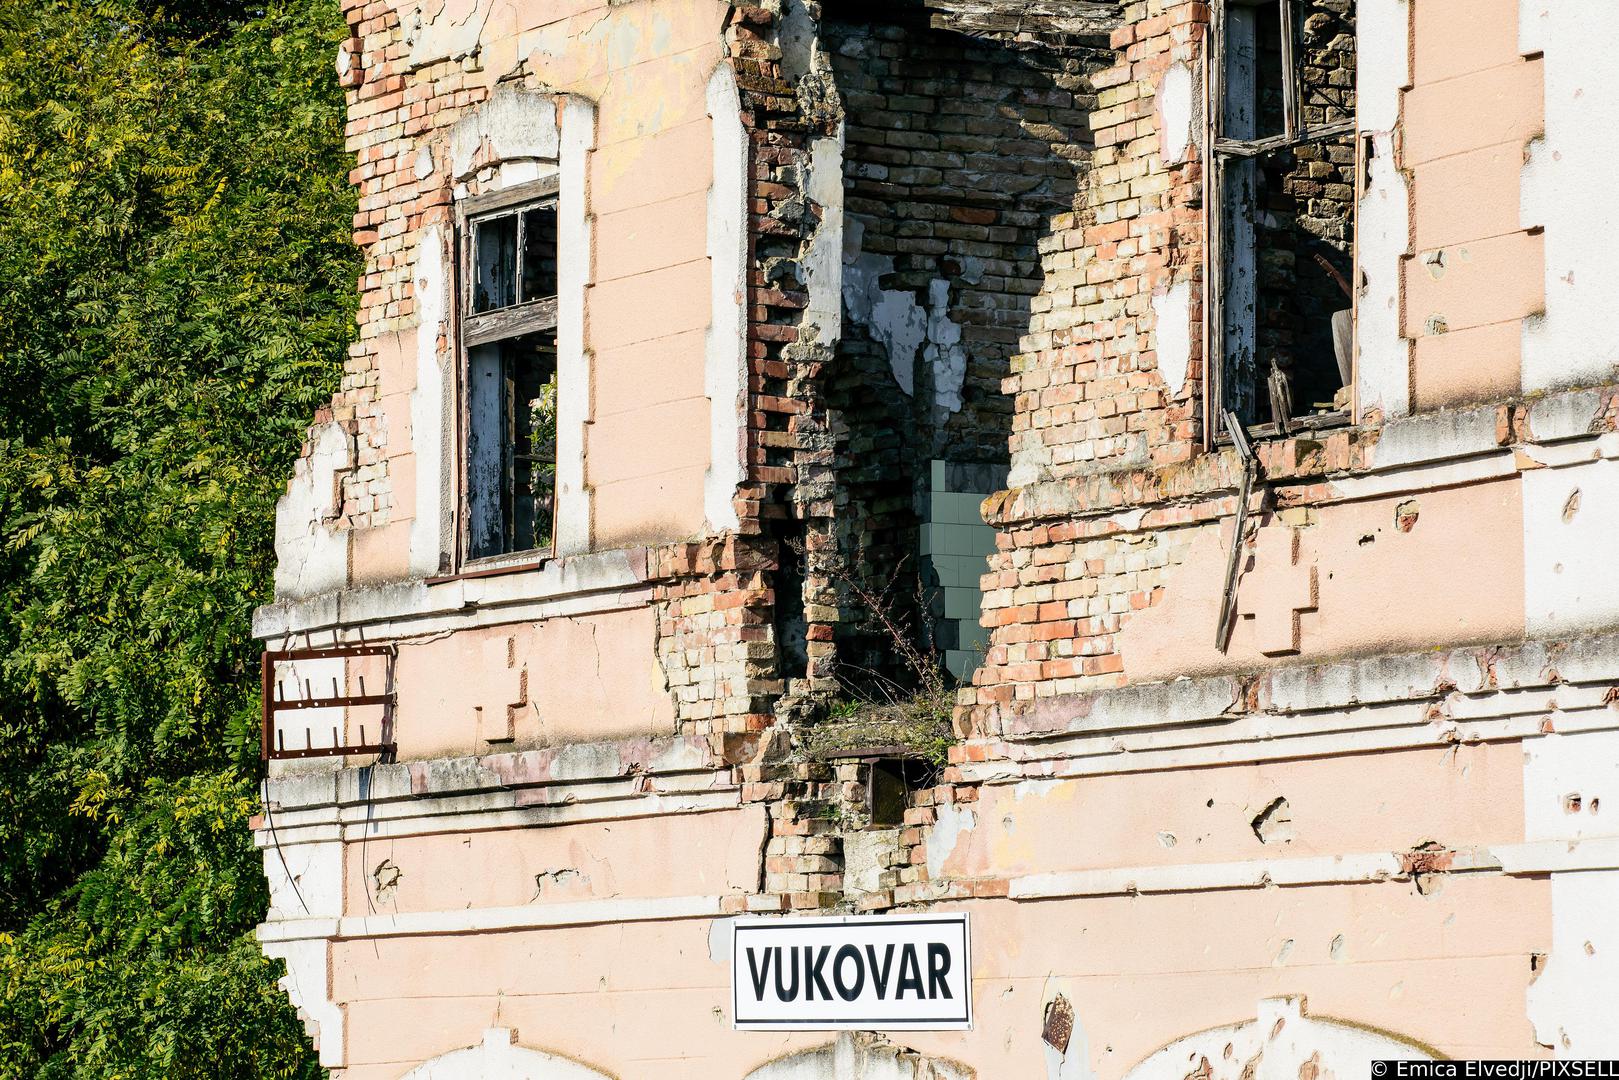 29.10.2021., Vukovar - Vukovar-mjesto posebnog domovinskog pijeteta. Blizi se 30. godisnjica okupacije Vukovara i suzivot se polako vraca u ovaj grad iako su ratne rane jos uvijek prisutne. U samom centru grada vidljivi su kontrasti obnovljenih i neobnovljenih zgrada. Razruseni Zeljeznicki kolodvor
